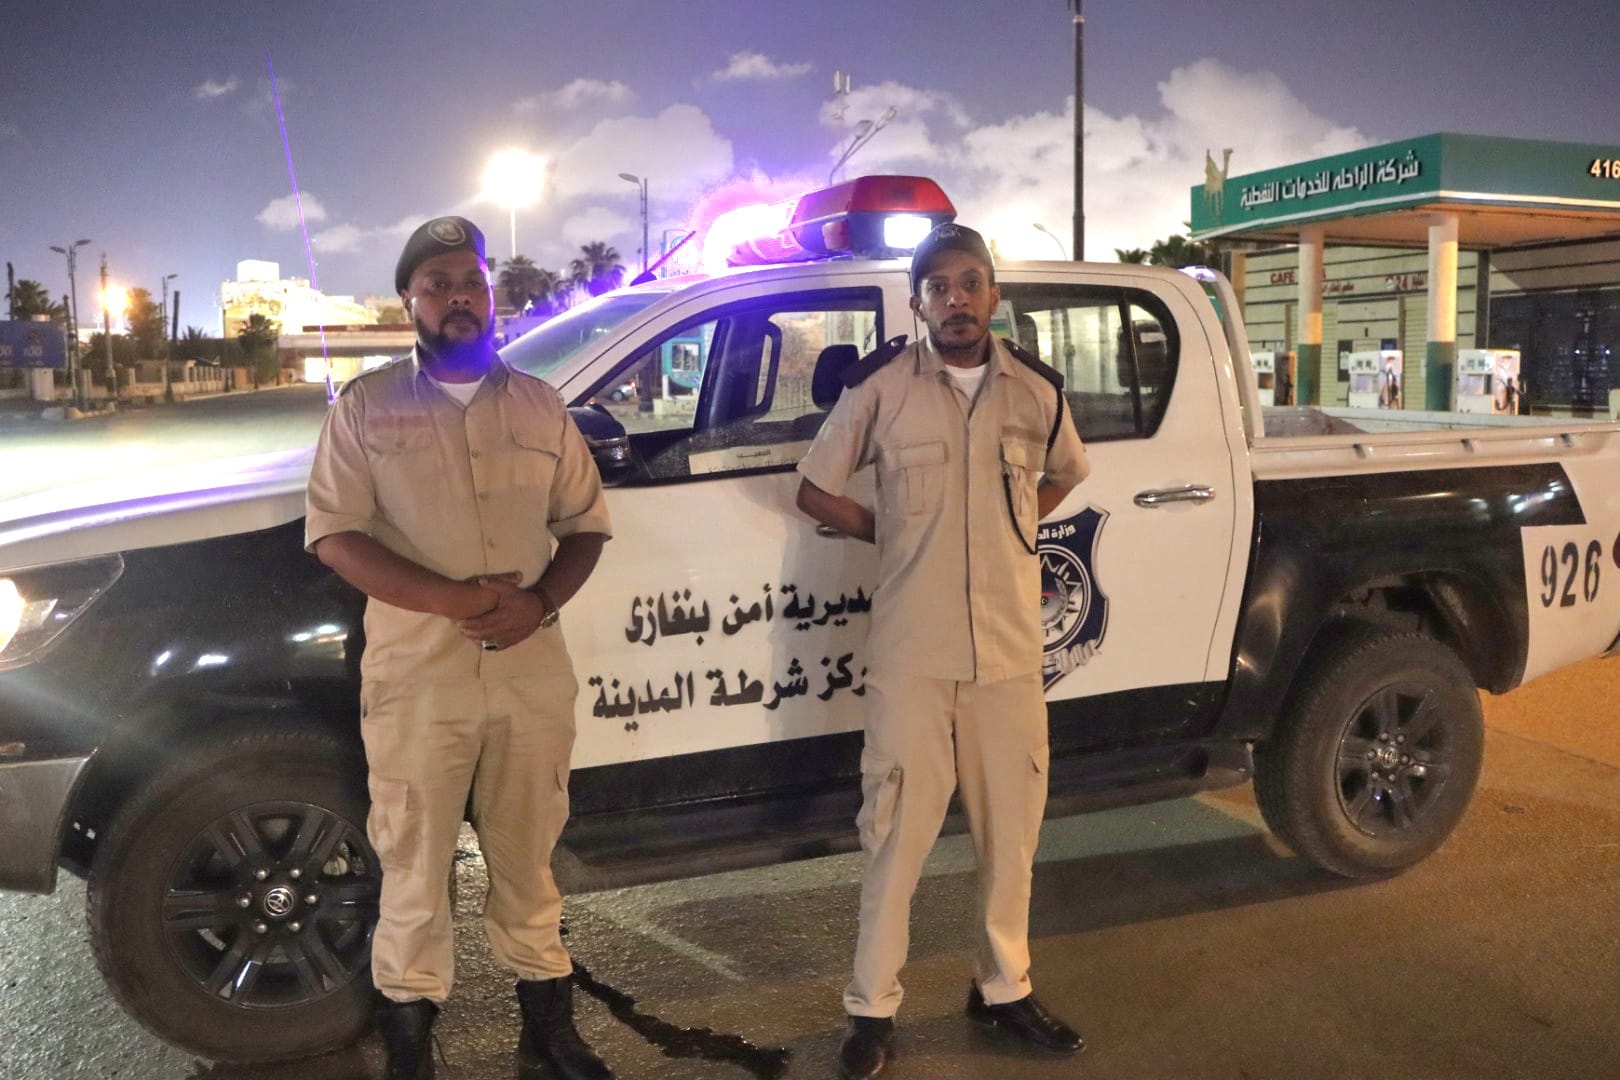 استيقافات امنية مُفاجئة ودوريات متحركة بمدينة بنغازي لضبط الشارع العام واستتباب الامن بالمدينة.